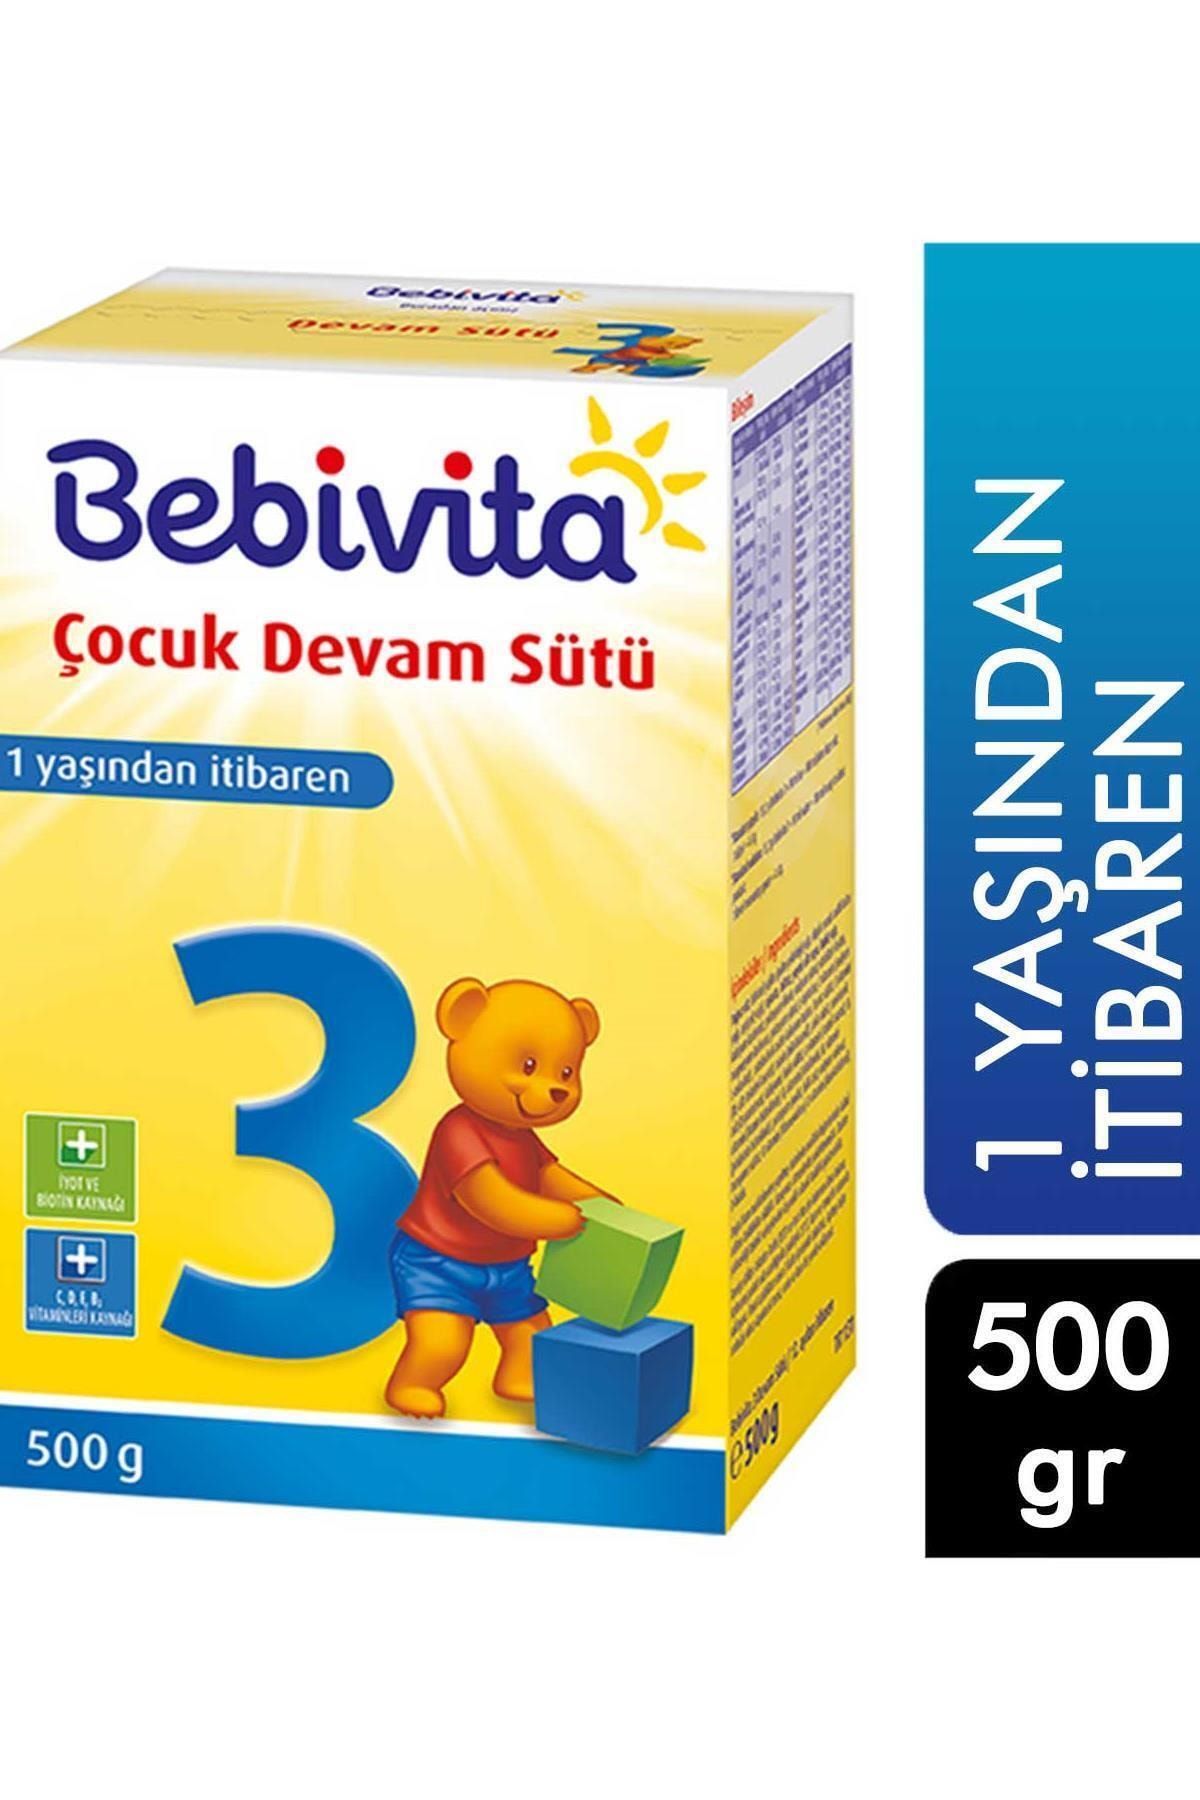 Bebivita Bebek Devam Sütü 500 G 1 Yaşından Itibaren 3 4018852021575 Kategori: Bebek Bisküvis